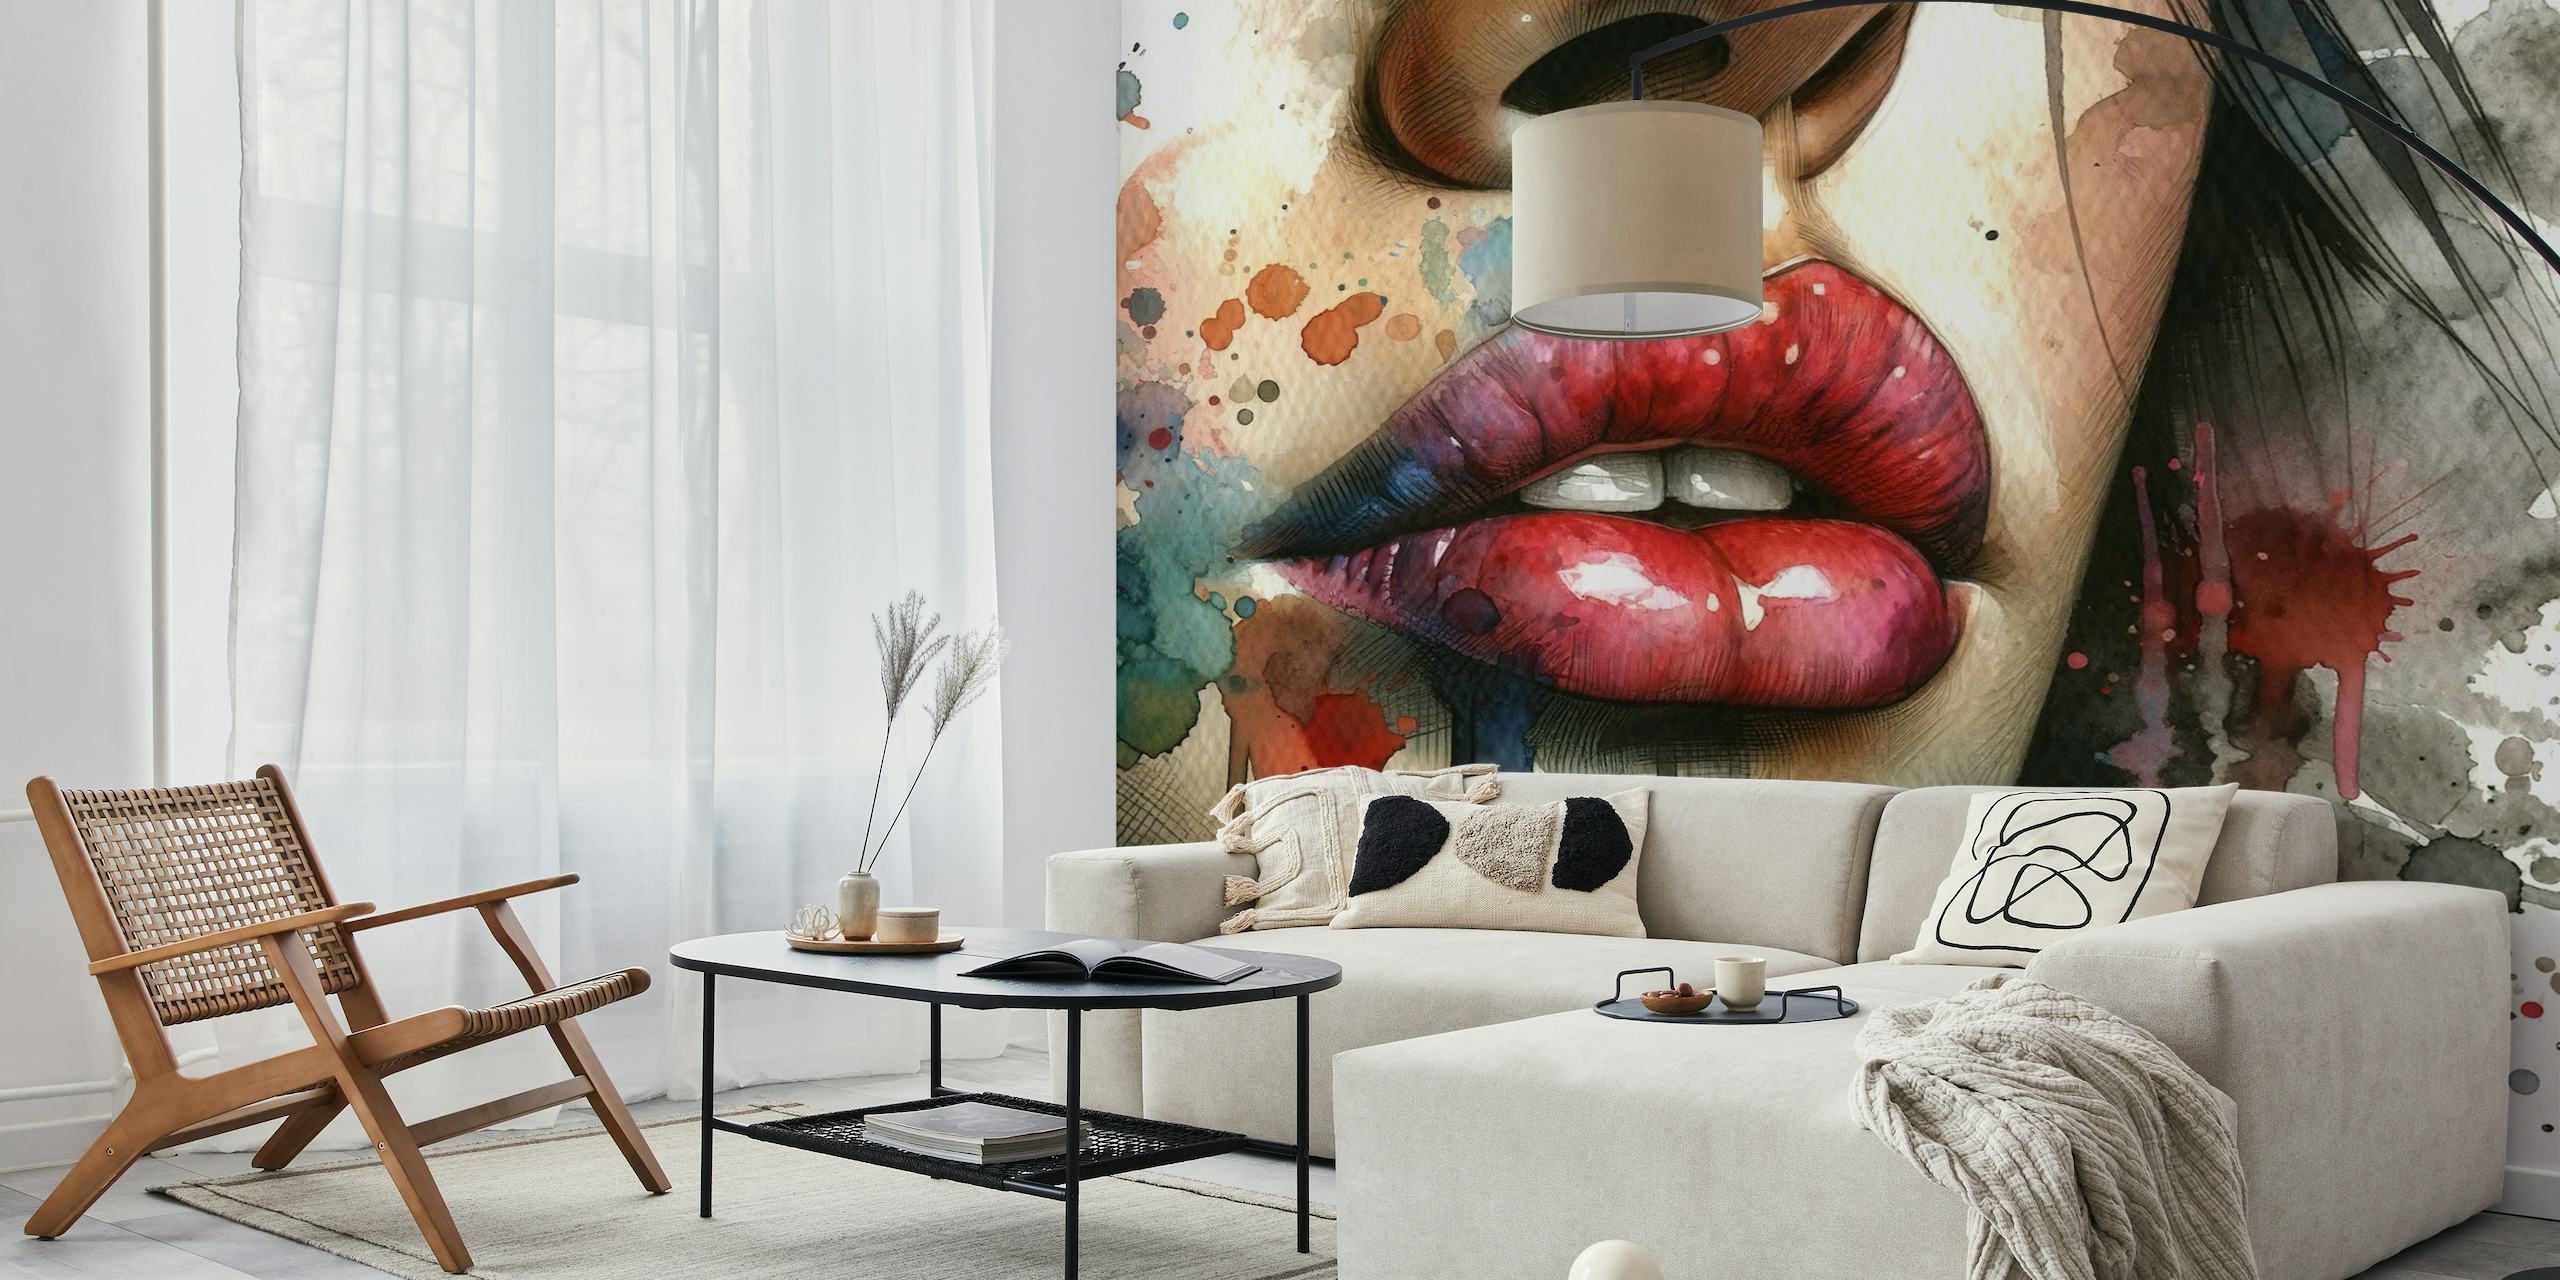 Abstract aquarel muurschildering van de lippen van een vrouw met levendige kleuraccenten